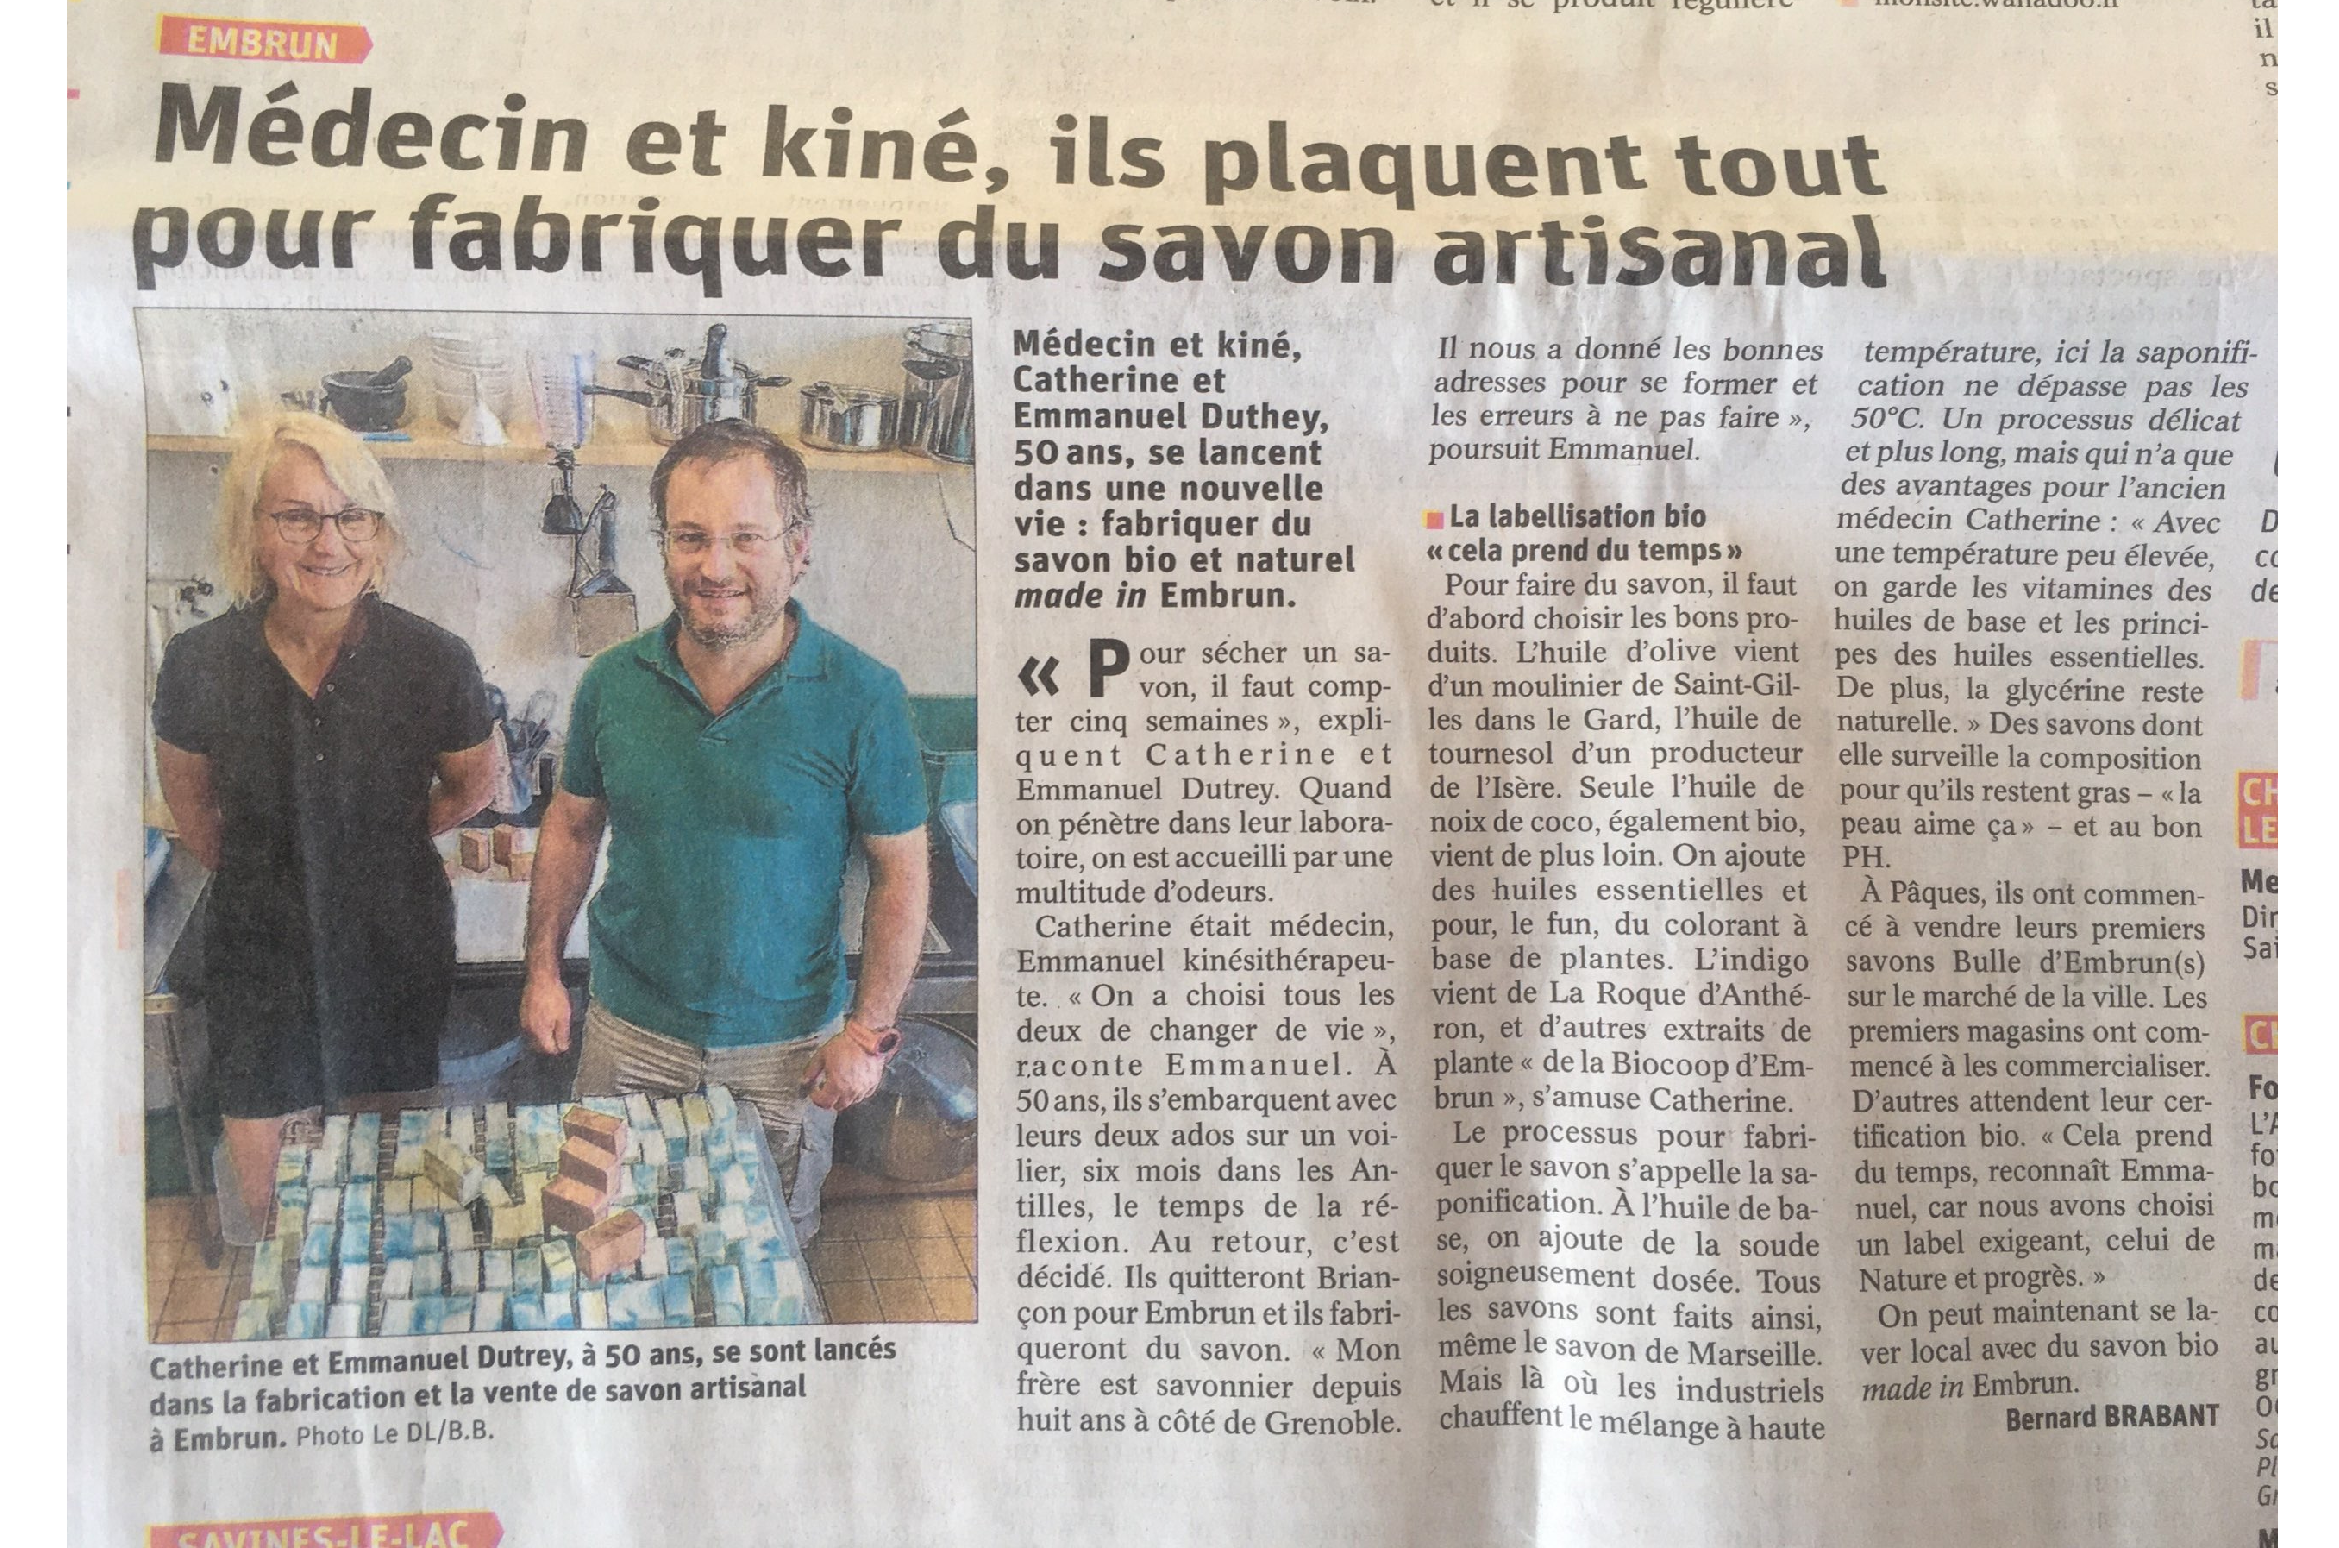 Article du Dauphiné : “Embrun : médecin et kiné, ils plaquent tout pour fabriquer du savon artisanal”